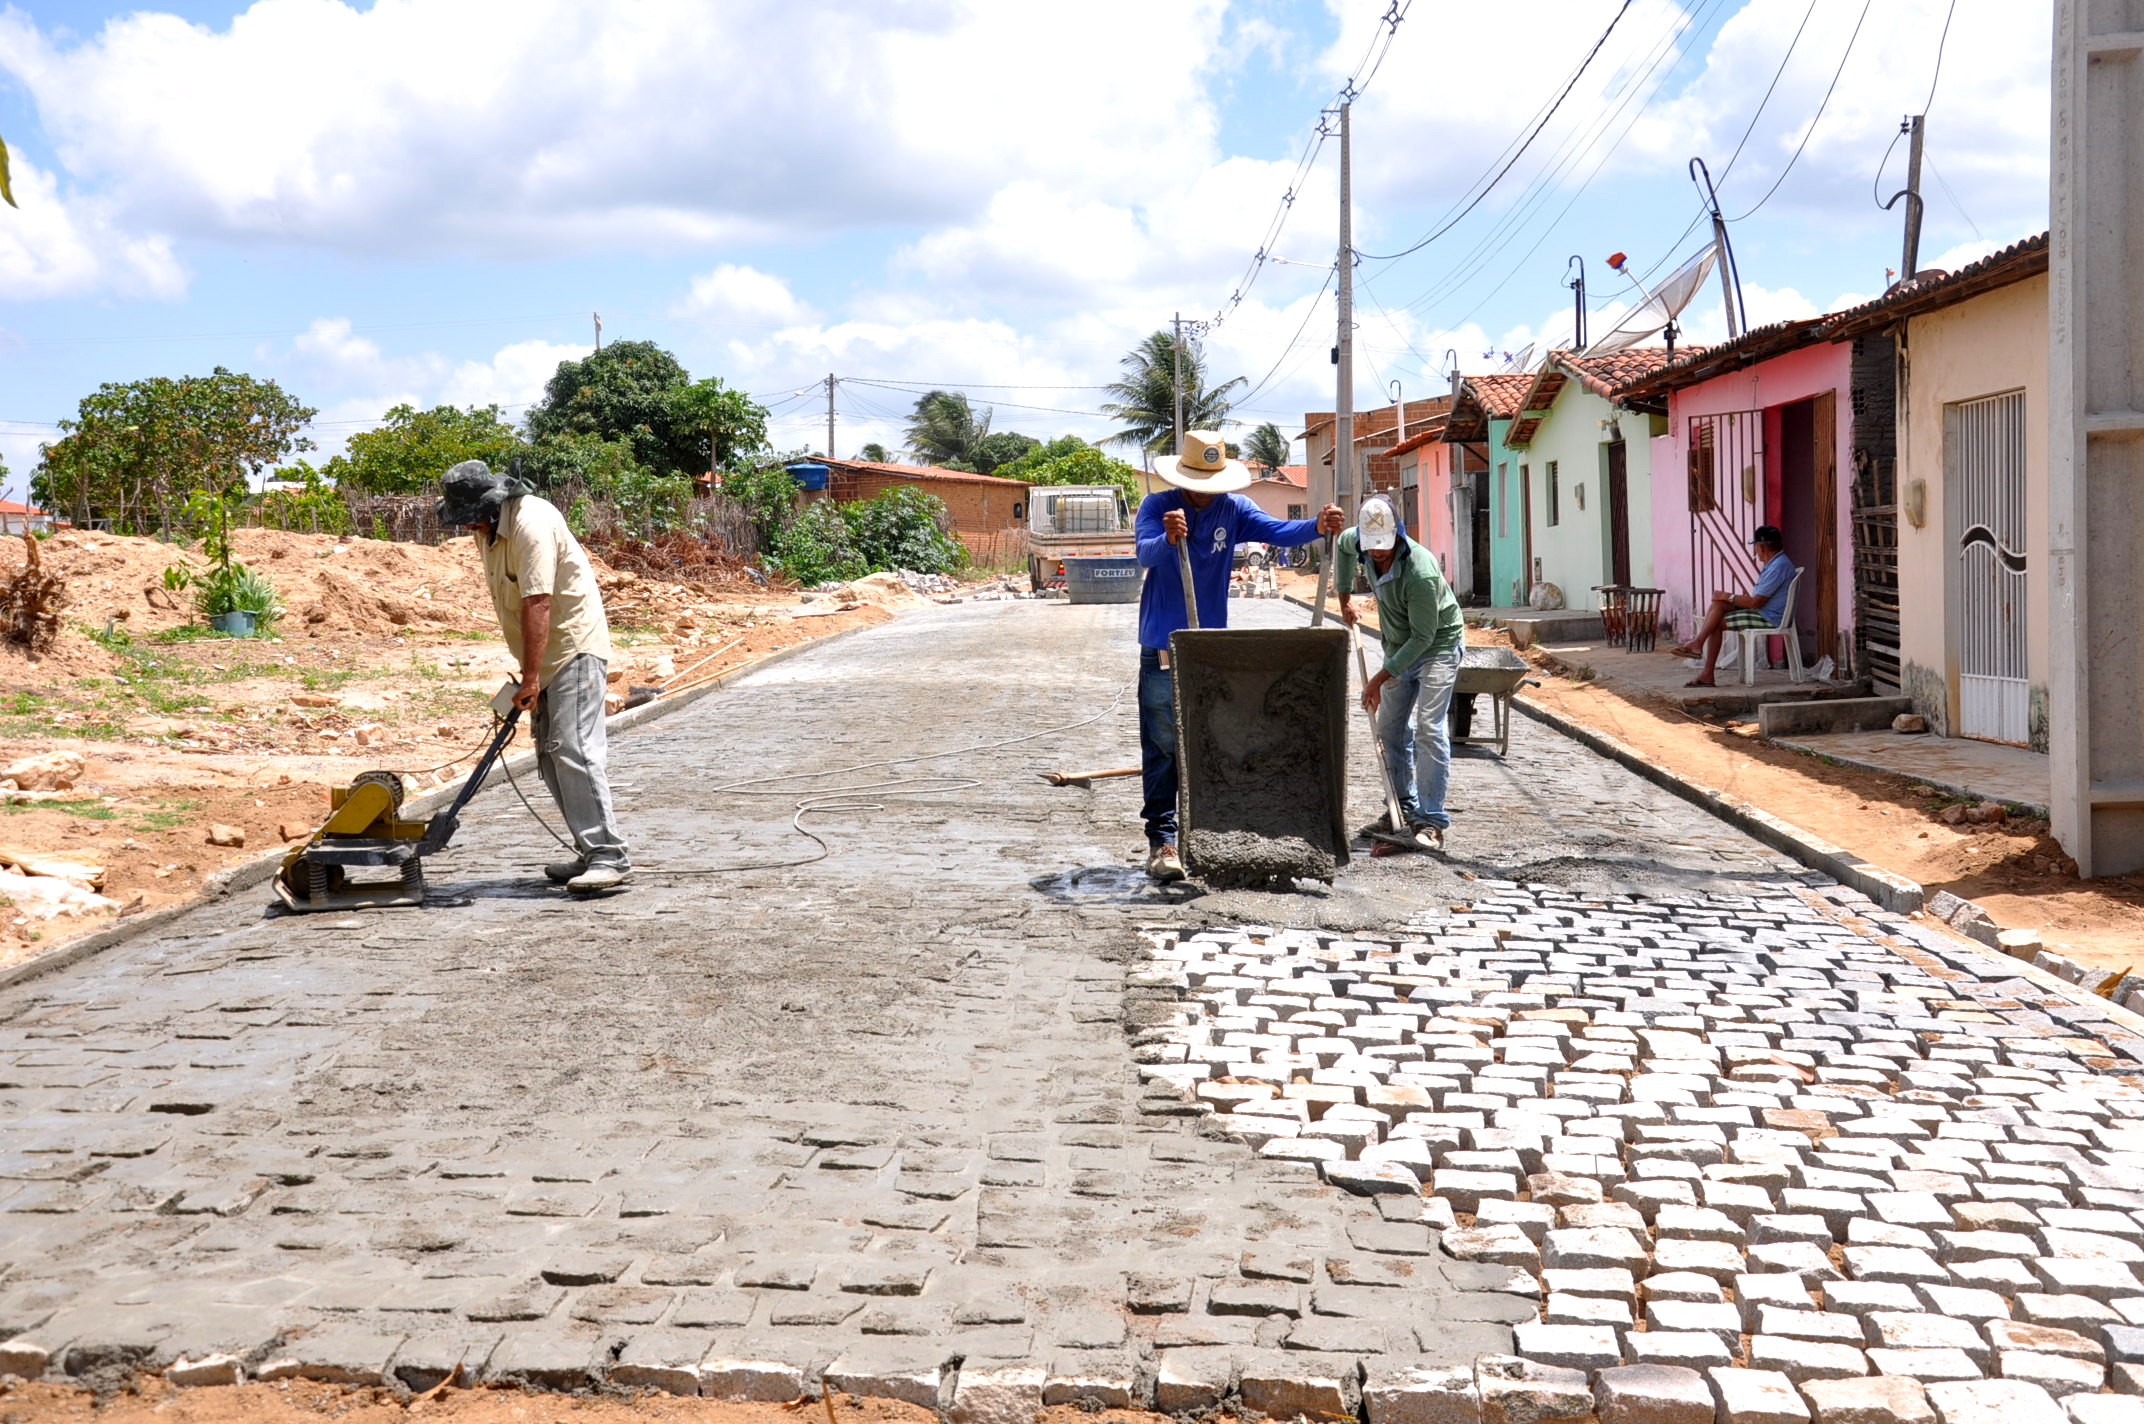 Construtora JVA concluindo serviços de drenagem superficial e pavimentação em paralelepipédico em Cerro Corá